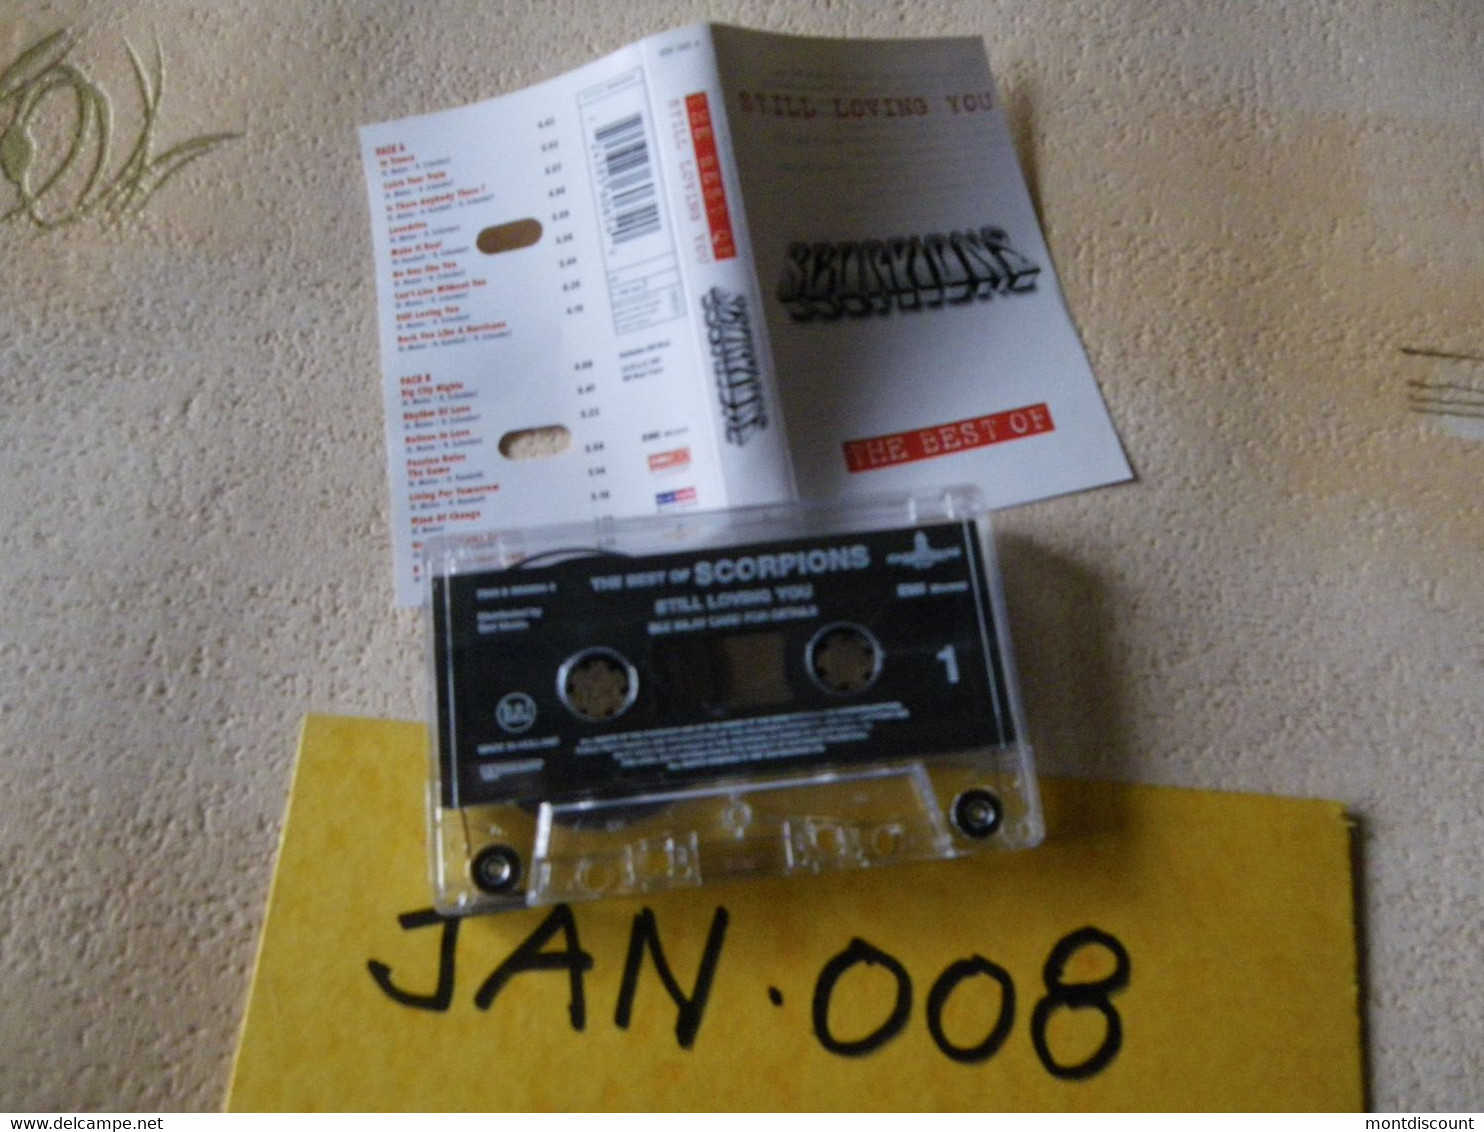 SCORPIONS K7 AUDIO VOIR PHOTO...ET REGARDEZ LES AUTRES (PLUSIEURS) (JAN 008) - Cassettes Audio